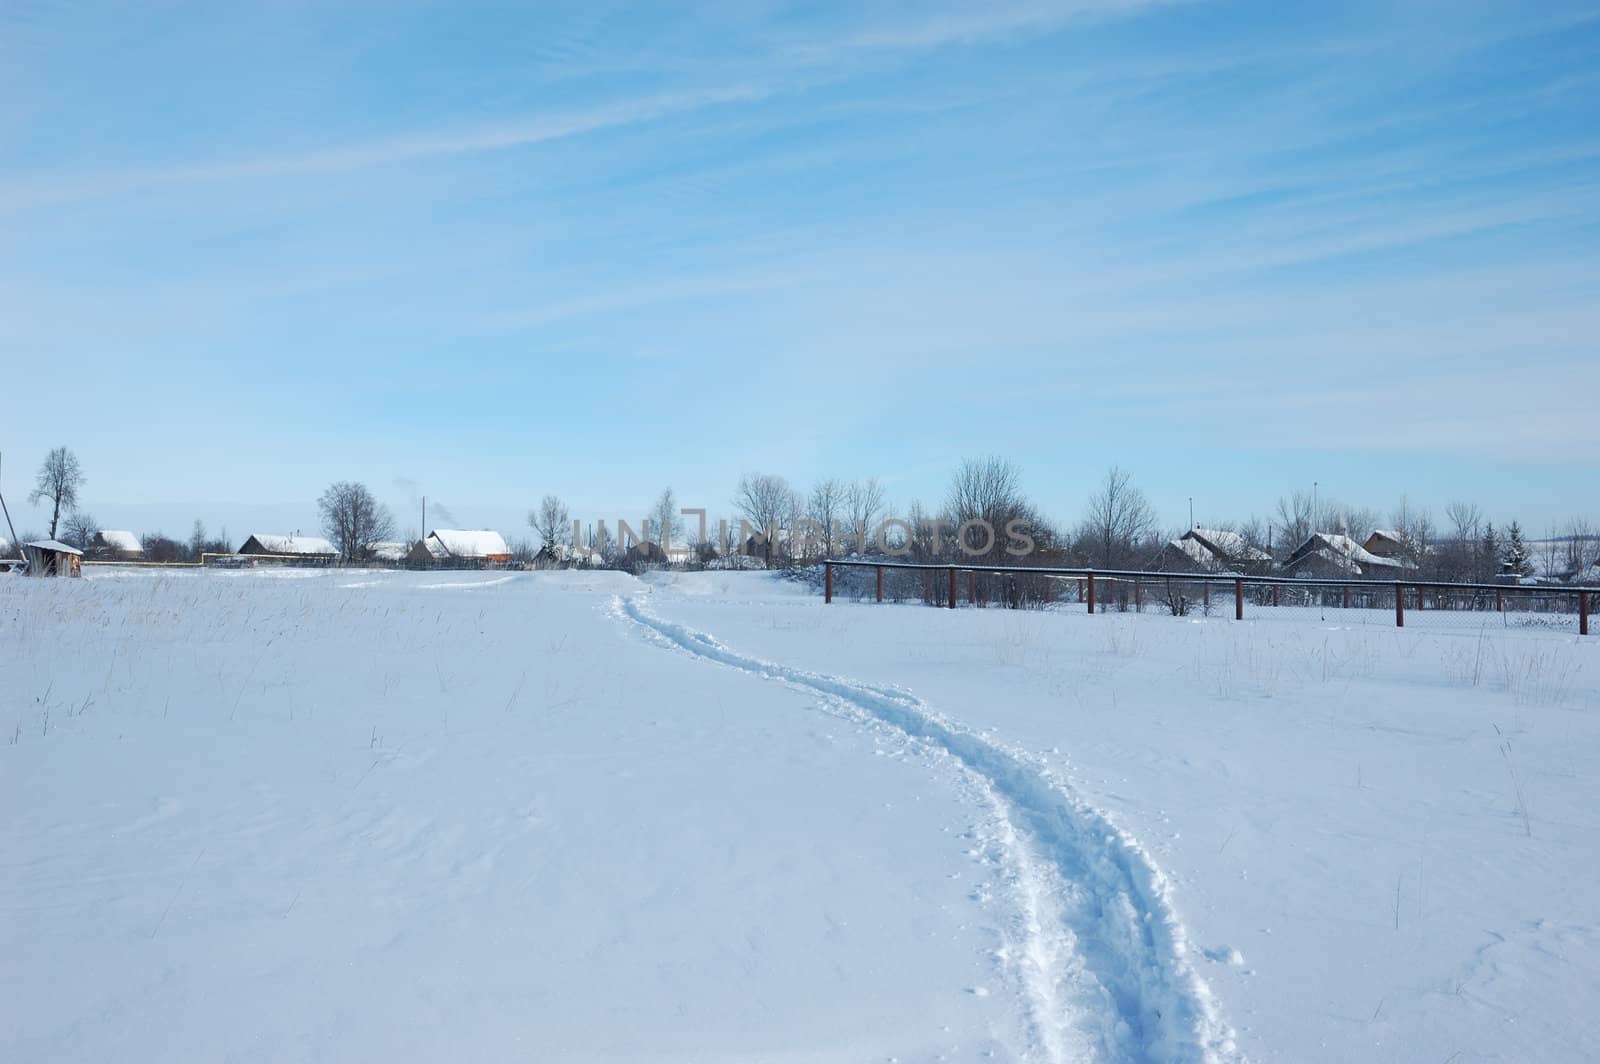 Narrow winter path in field by wander